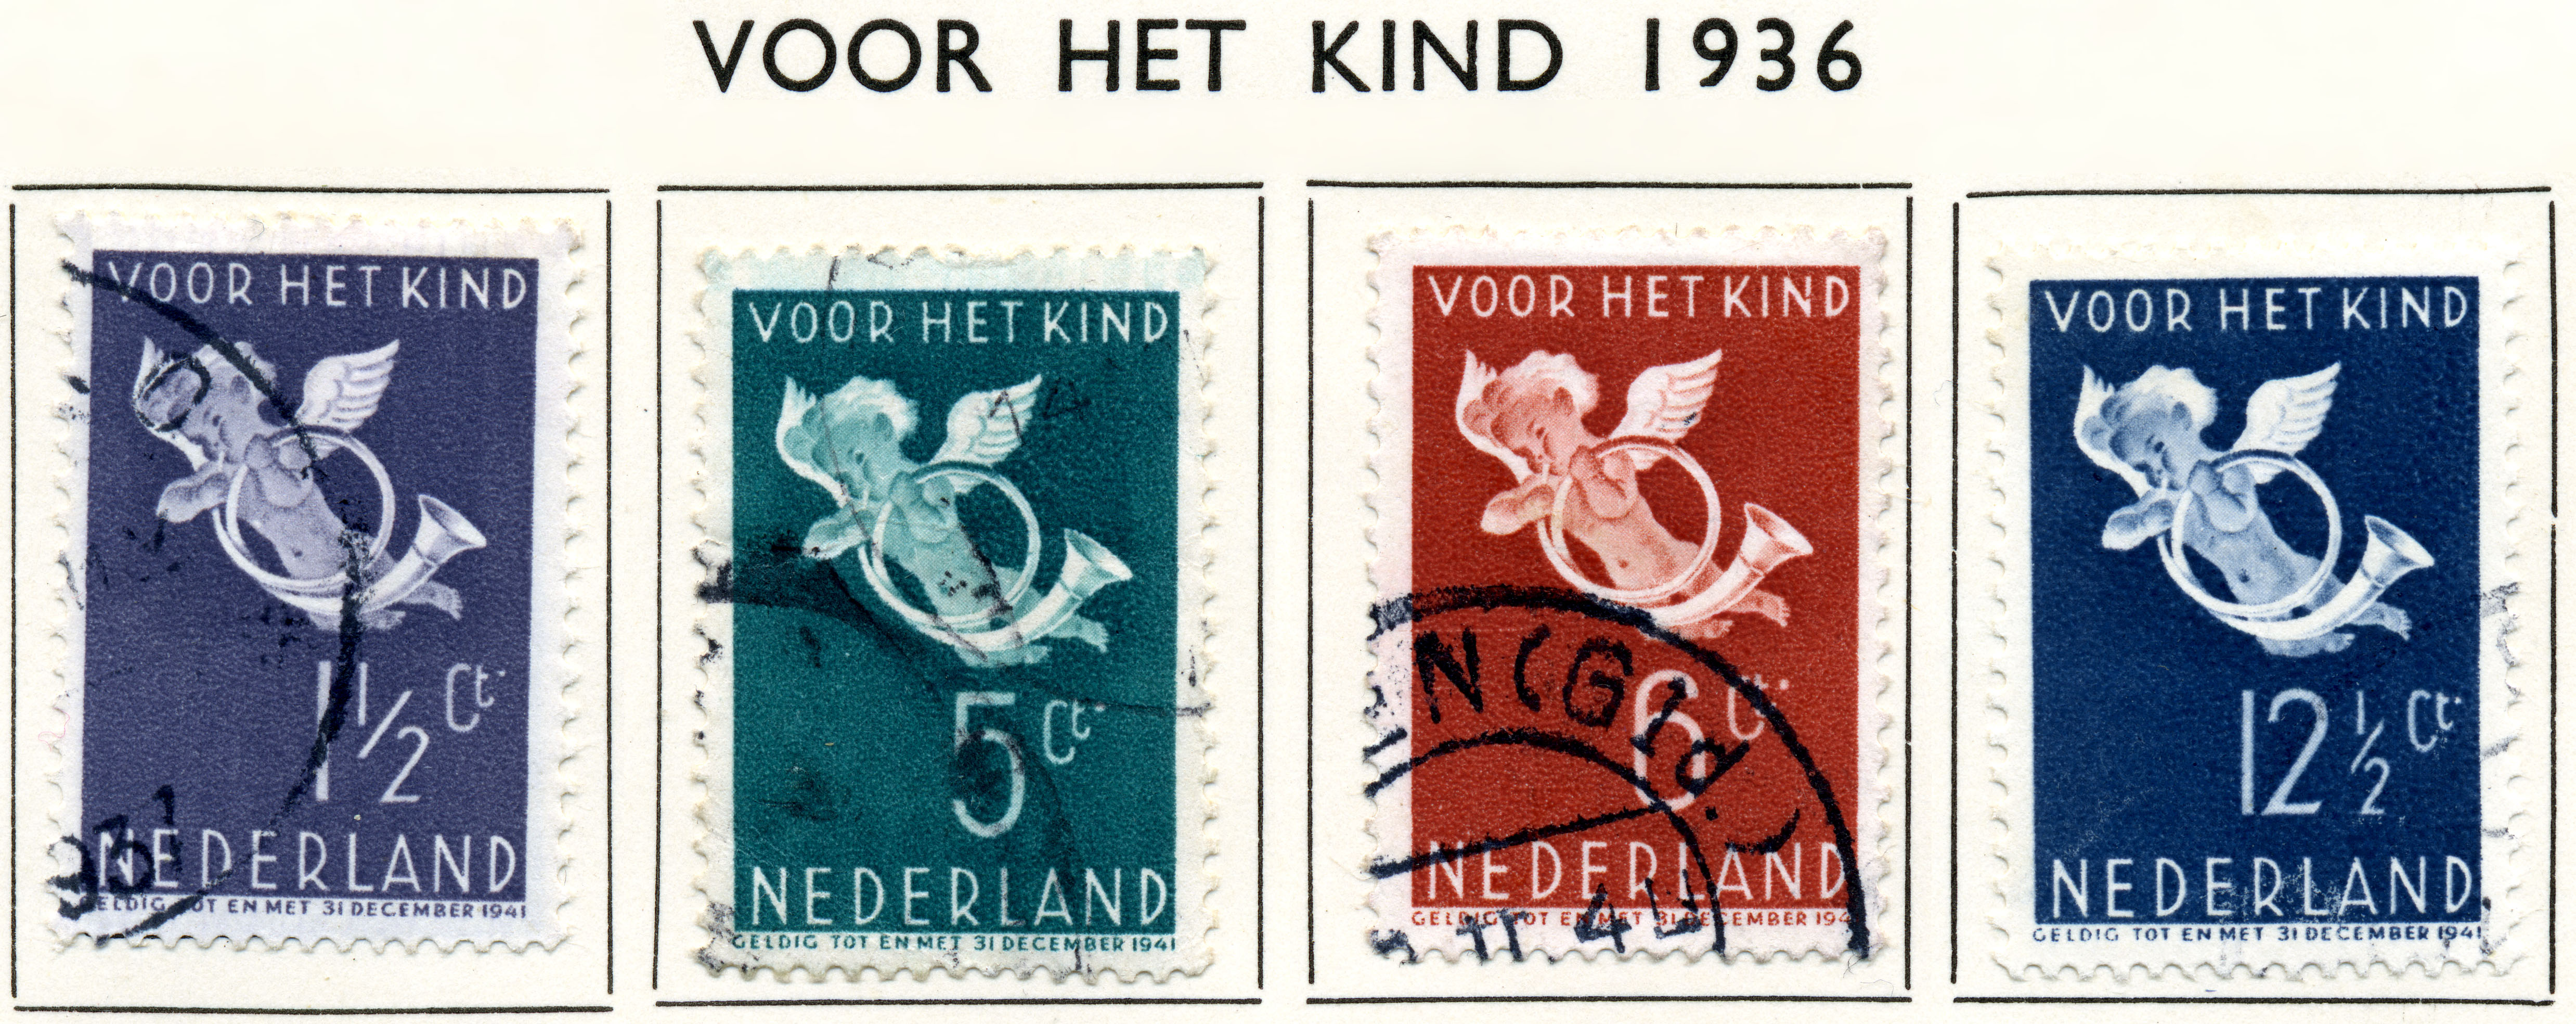 Postzegel 1936 voor het kind